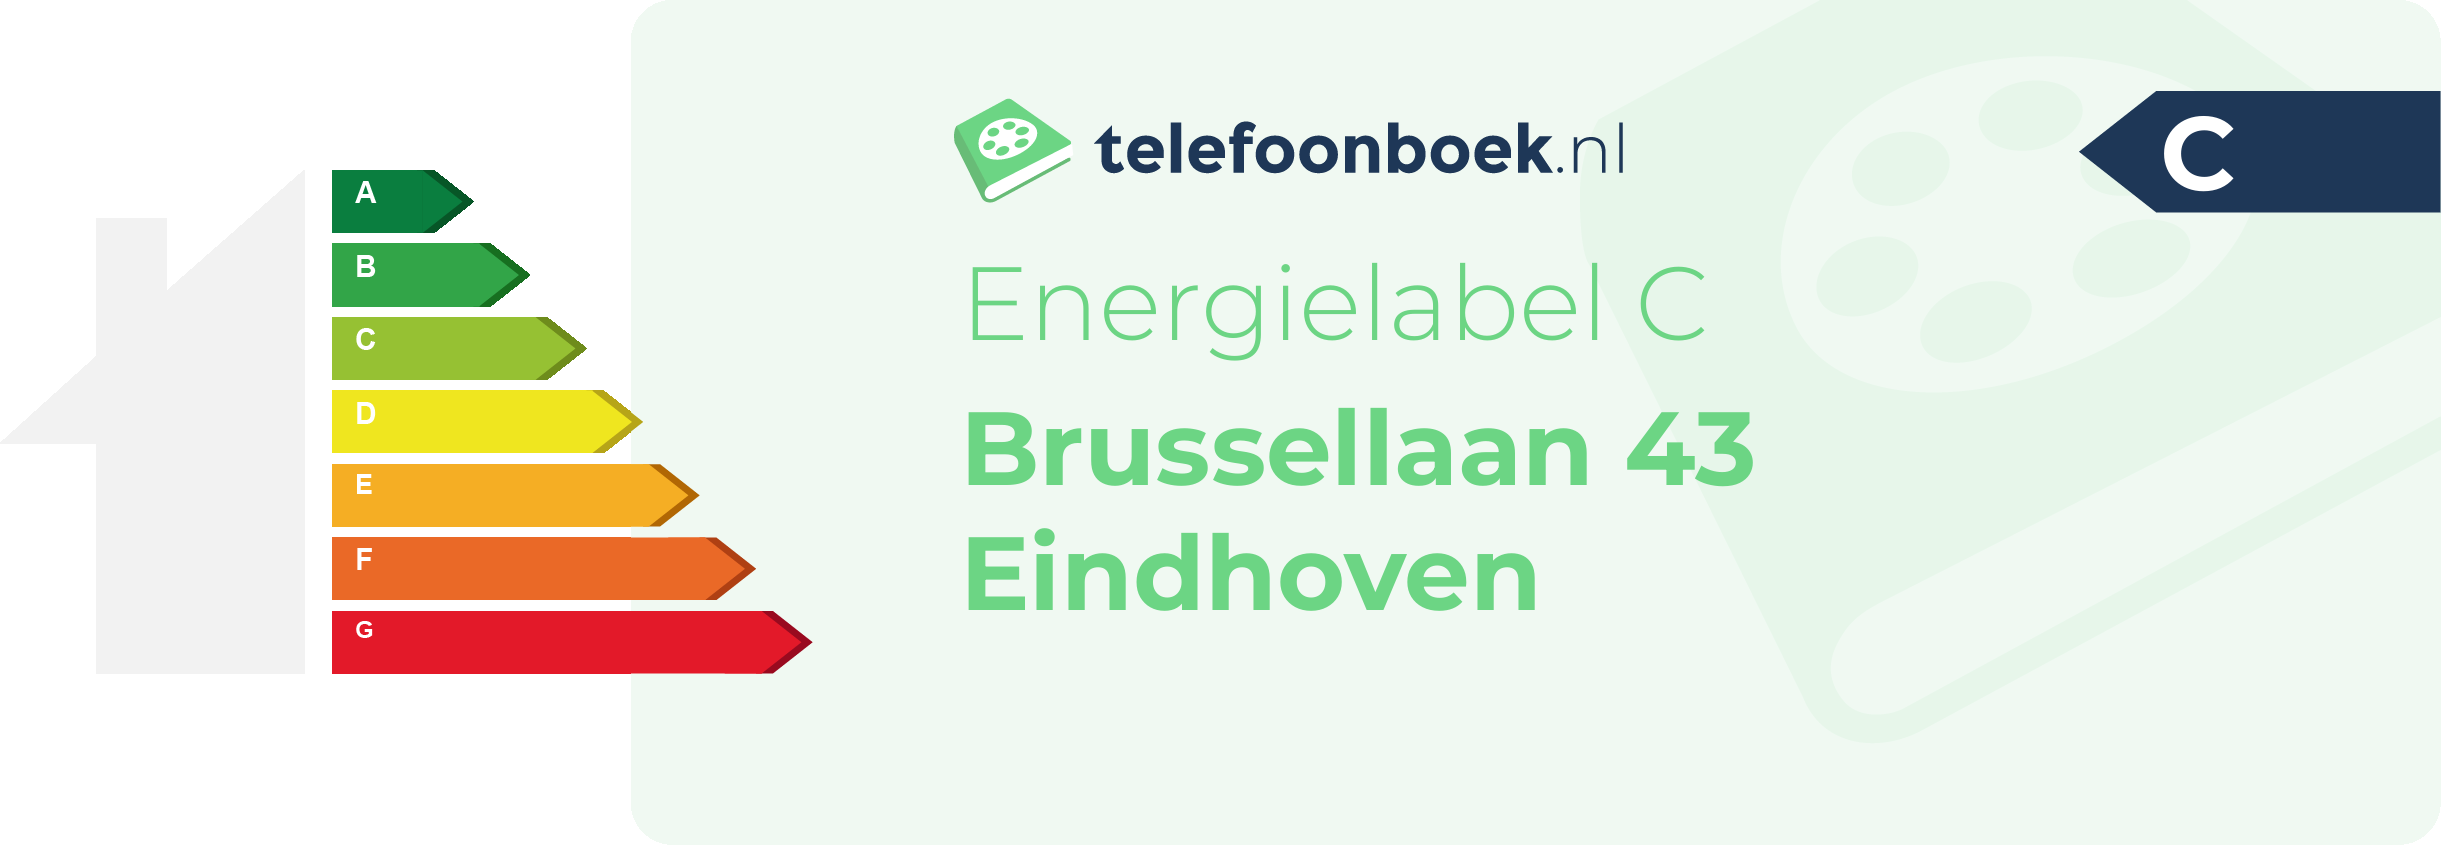 Energielabel Brussellaan 43 Eindhoven